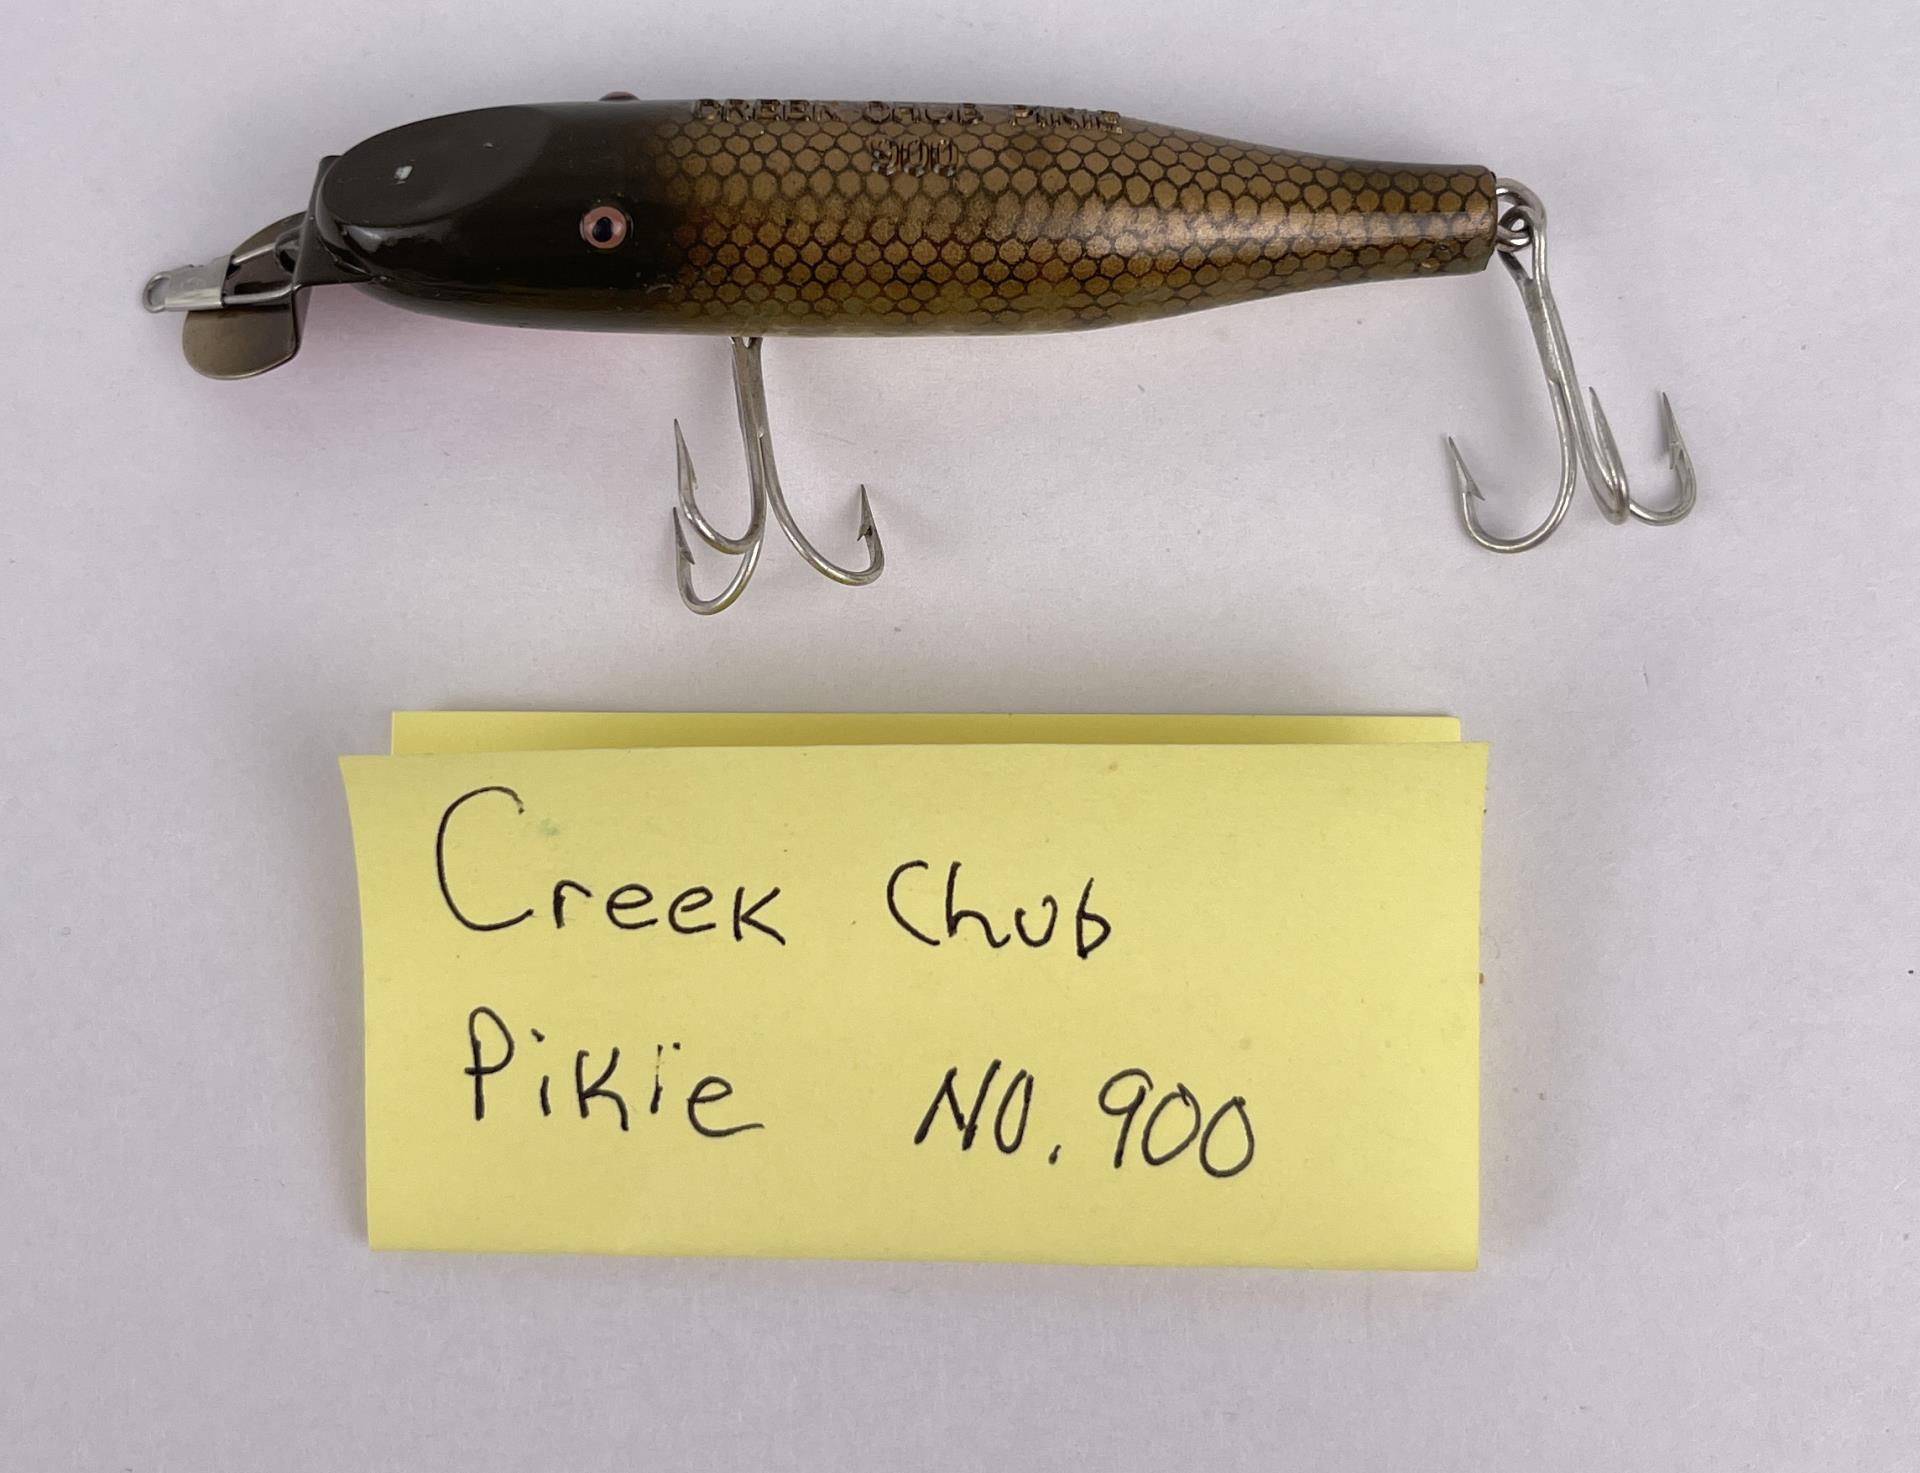 Creek Chub Pikie 900 Fishing Lure